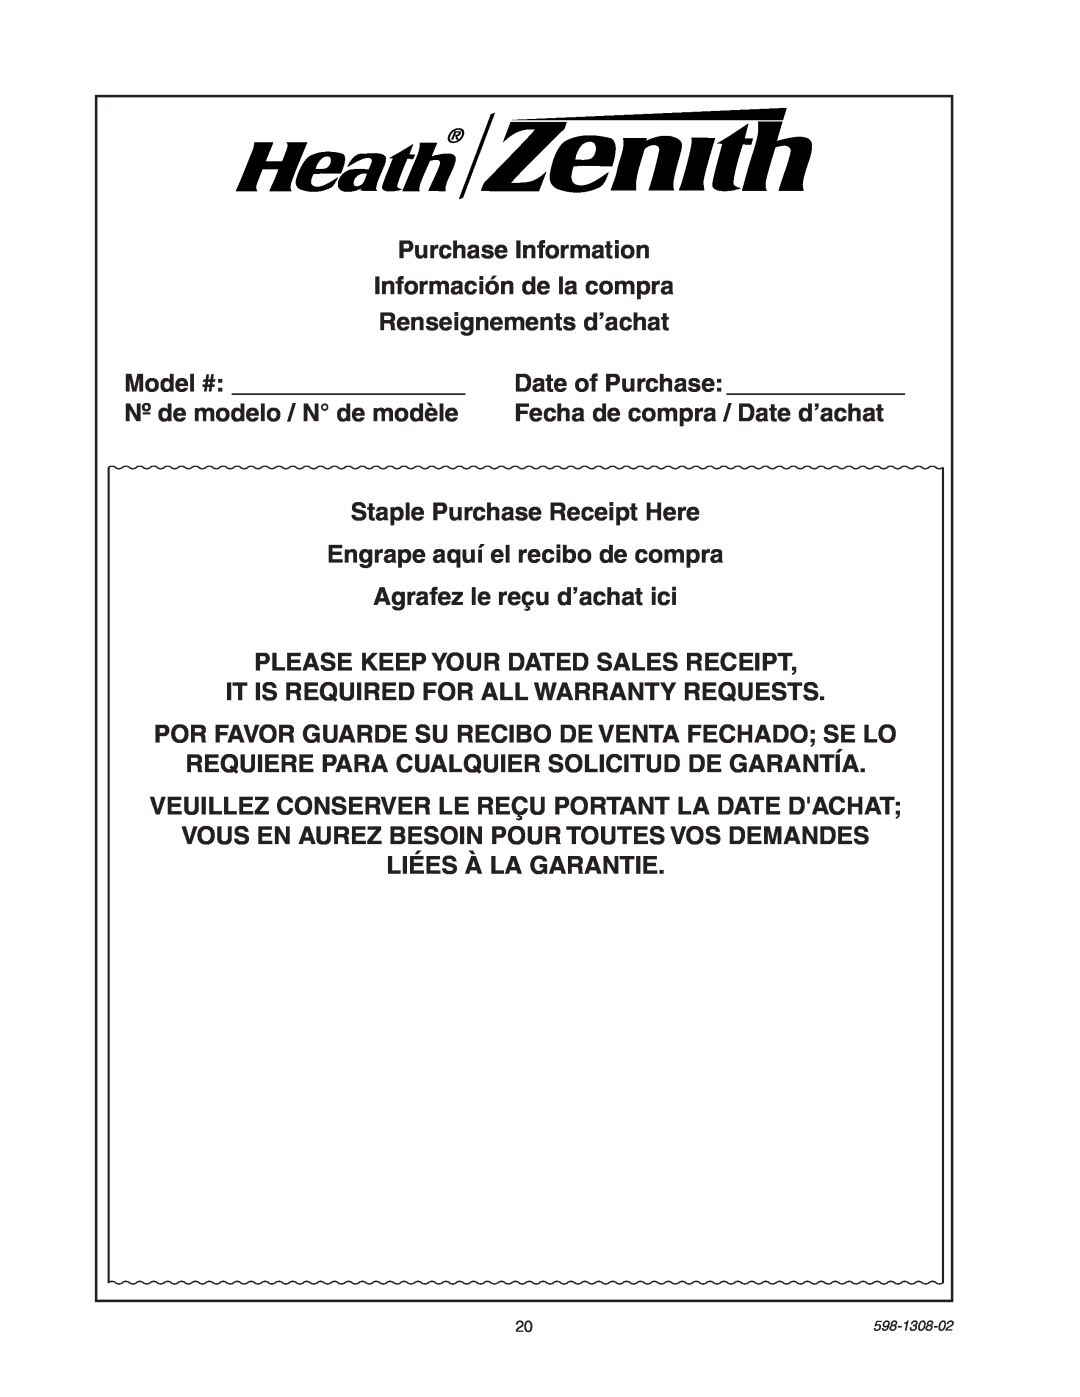 Heath Zenith 5718 manual Purchase Information Información de la compra 